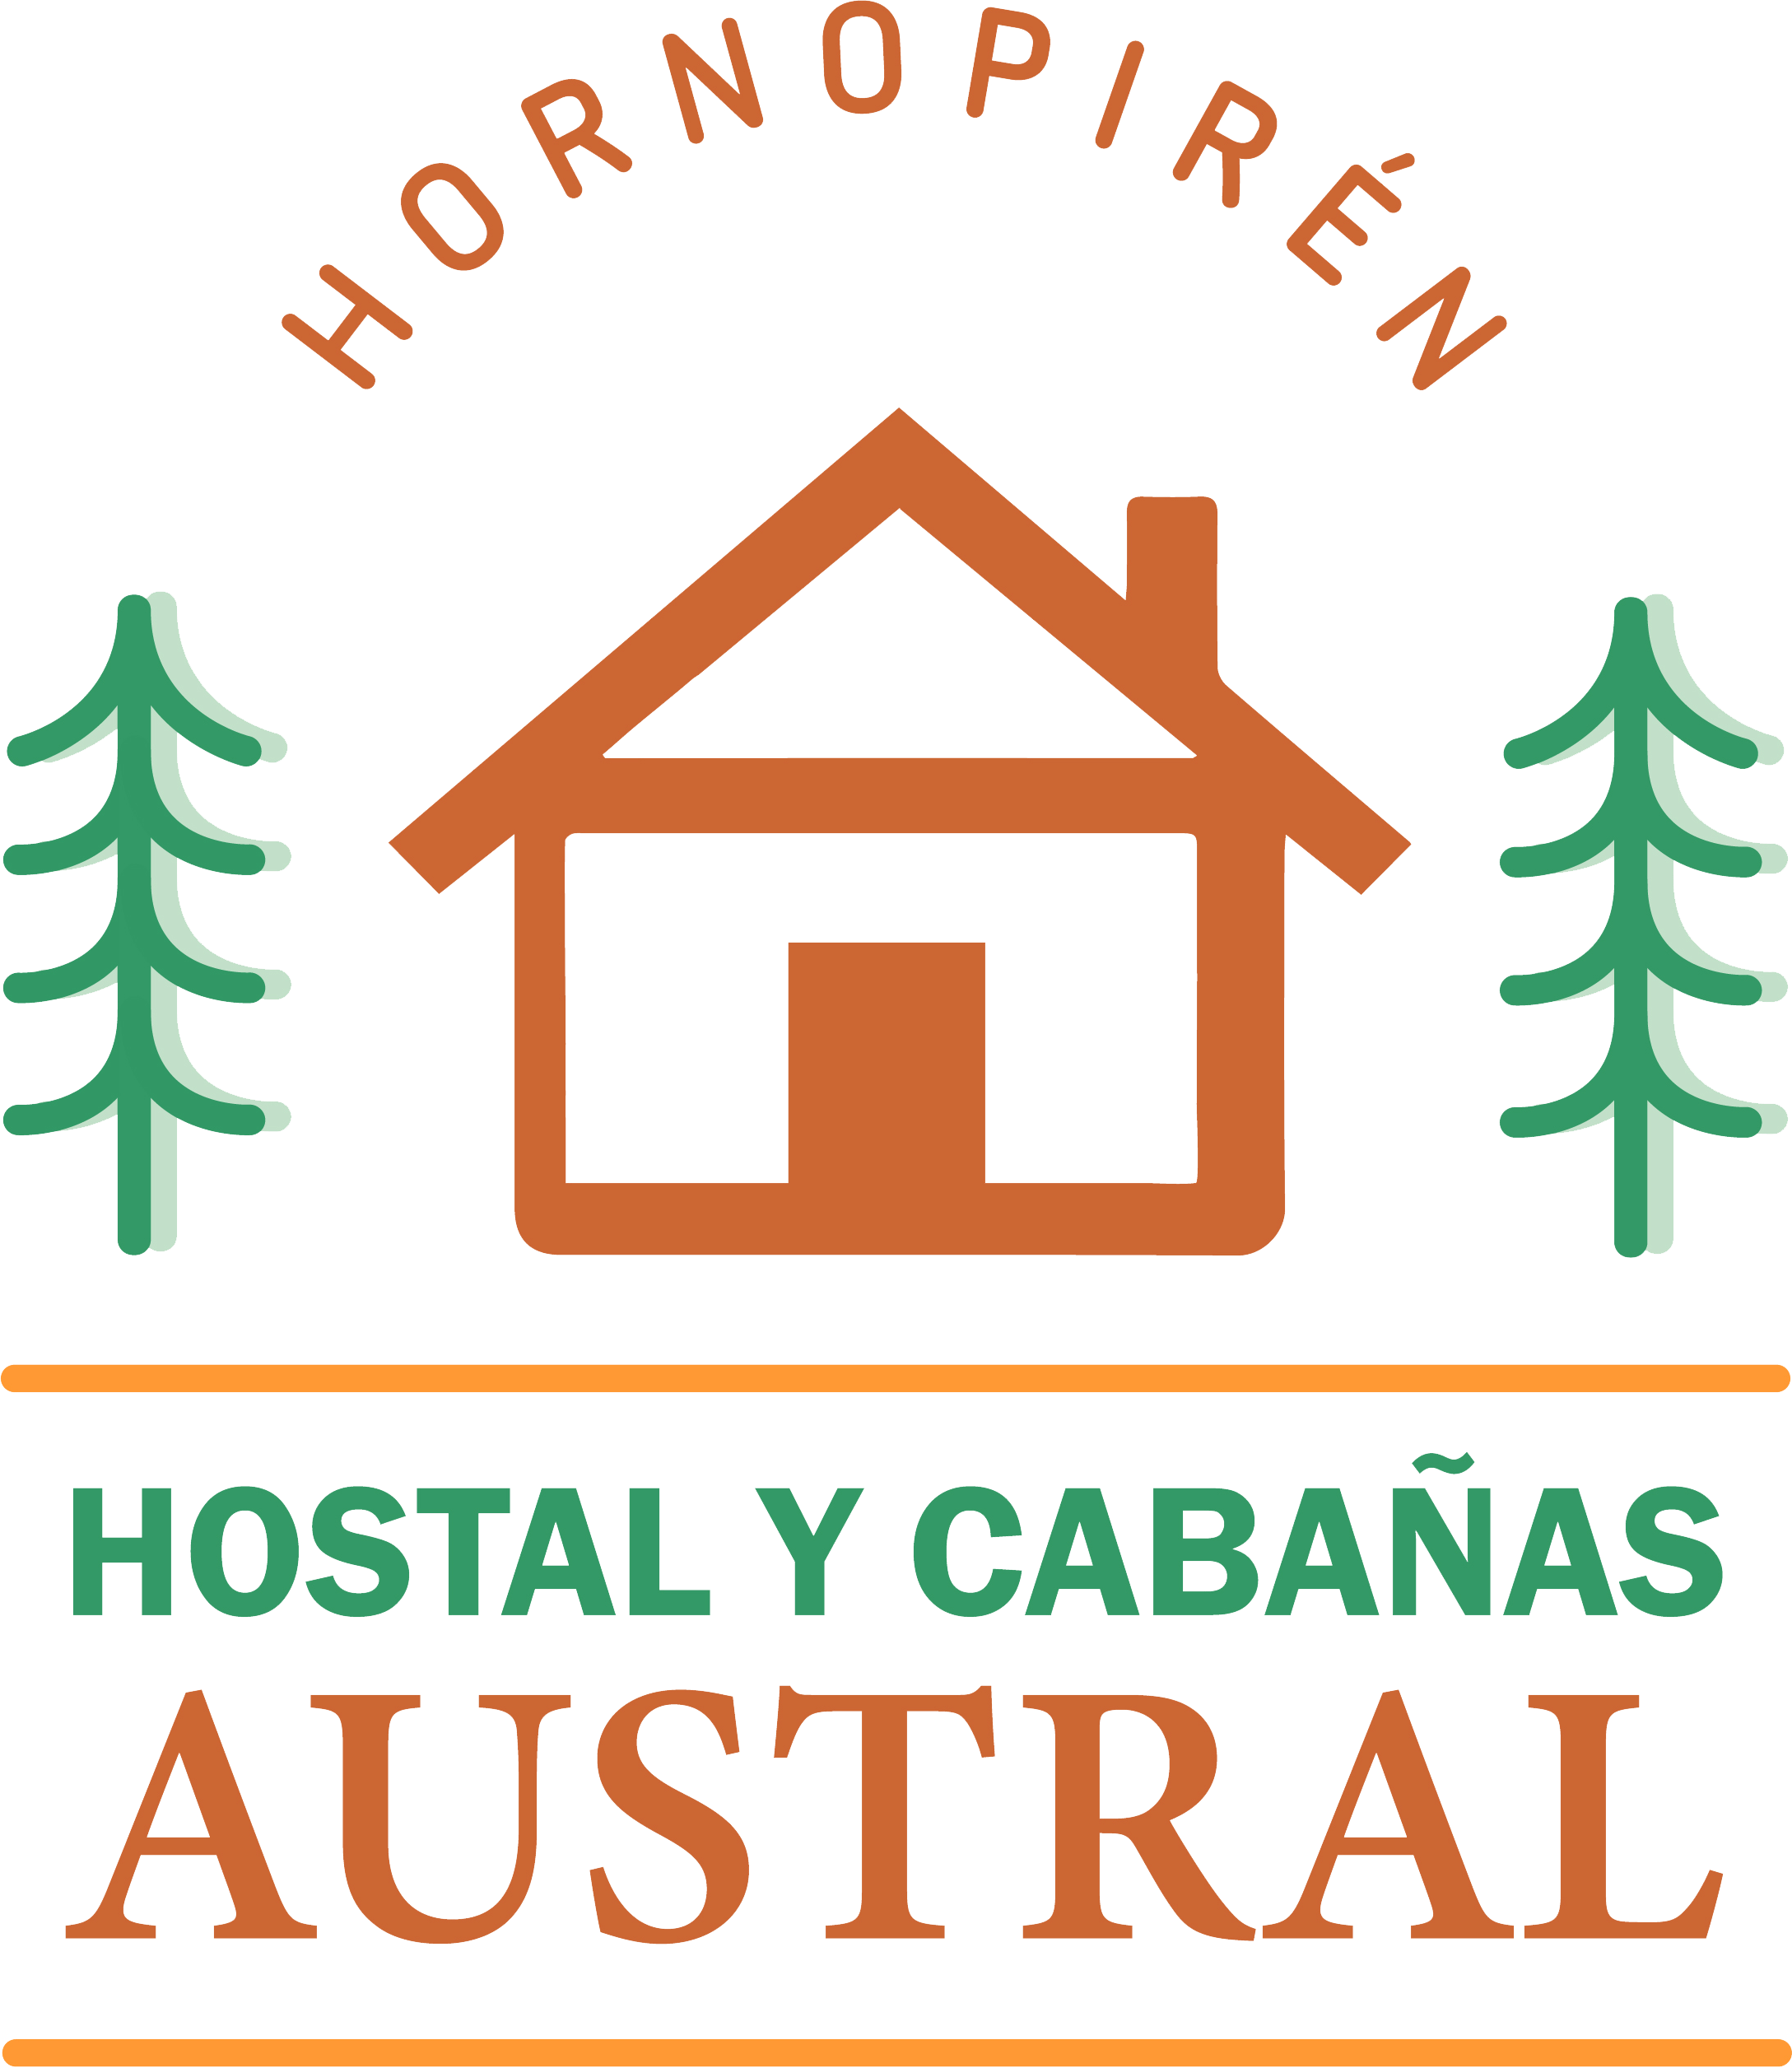 logo-hostal-austral